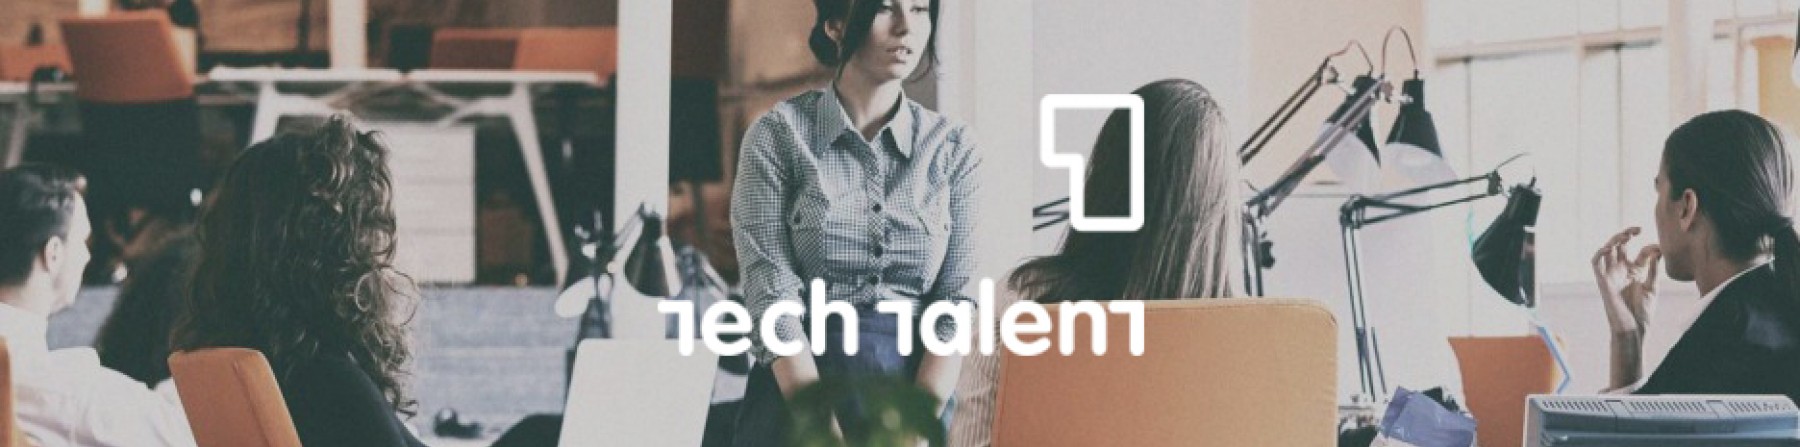 Tech Talent teaser